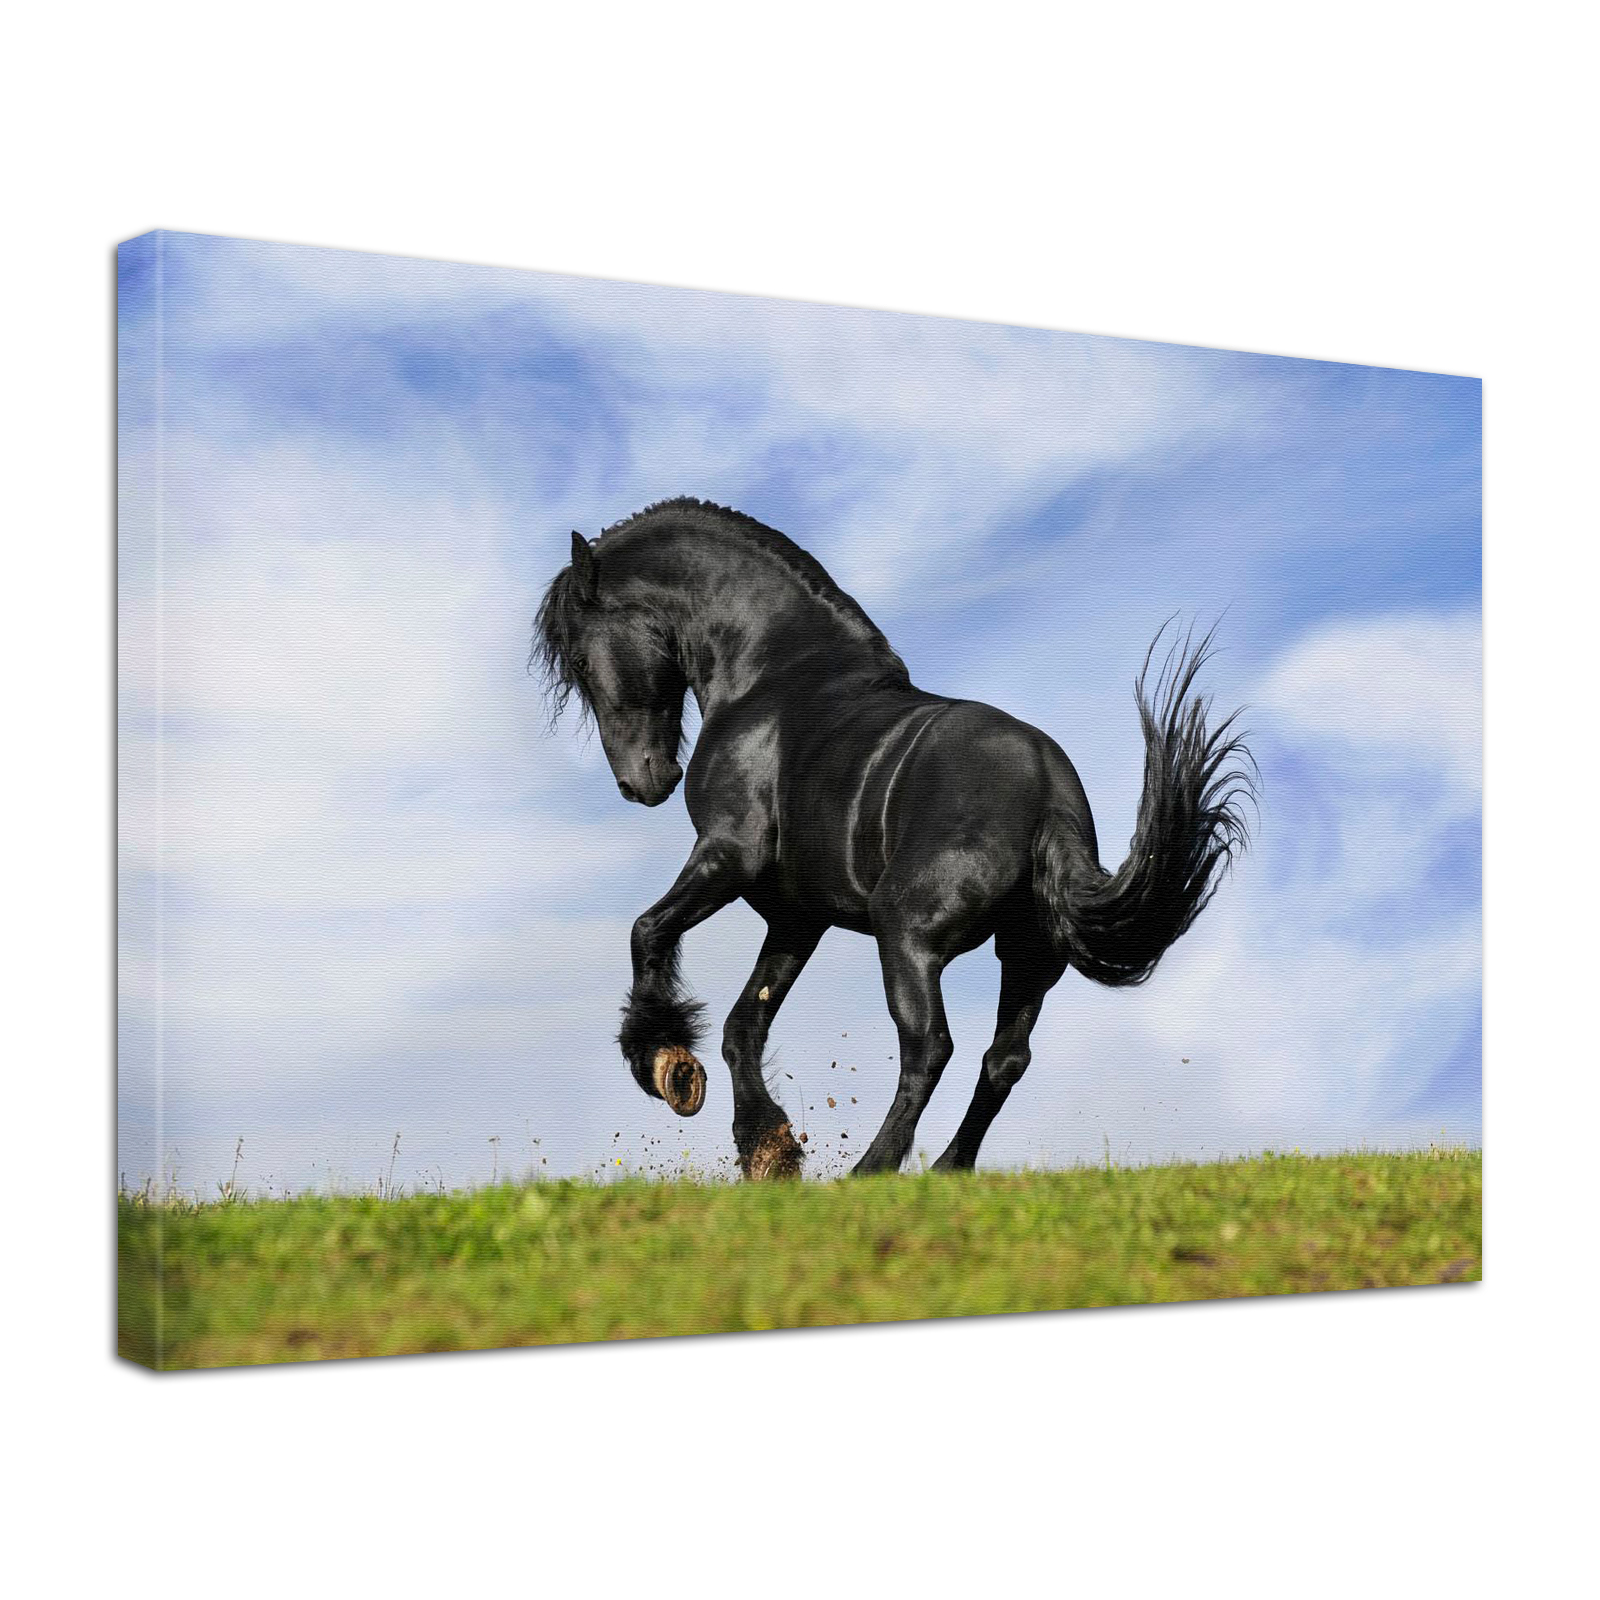 Leinwand Bild edel Tiere Pferd Black Beauty